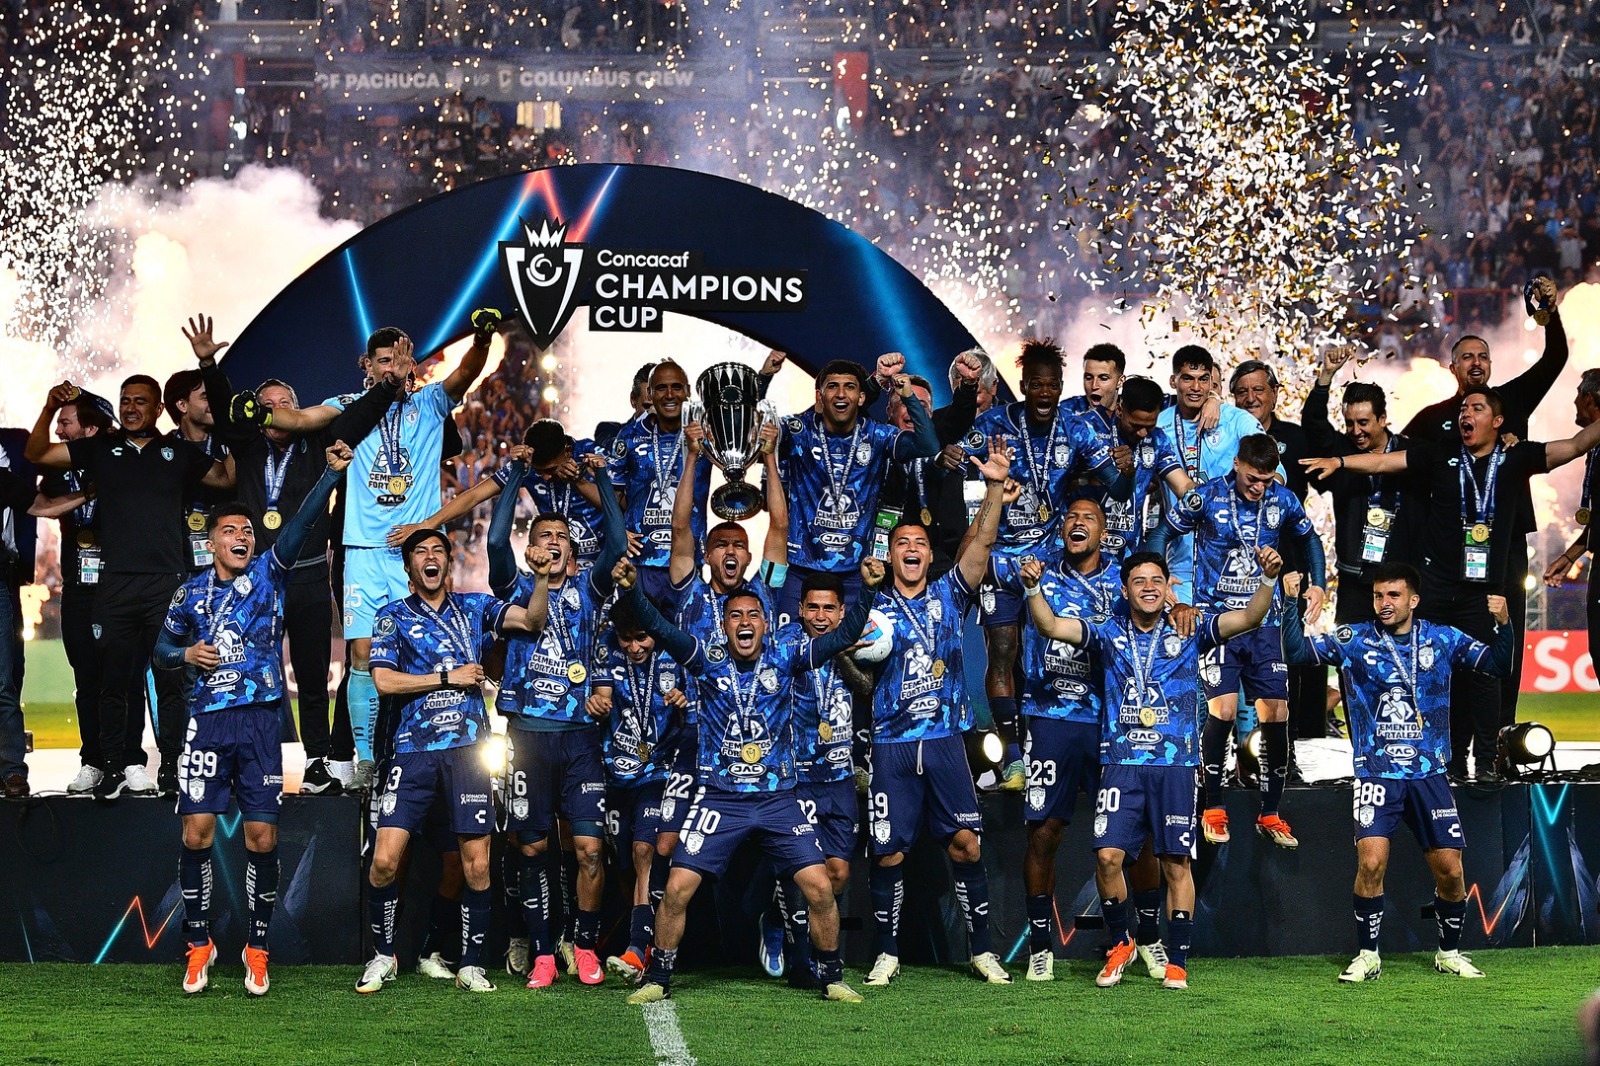 Pachuca, campeón de la Concacaf Champions Cup